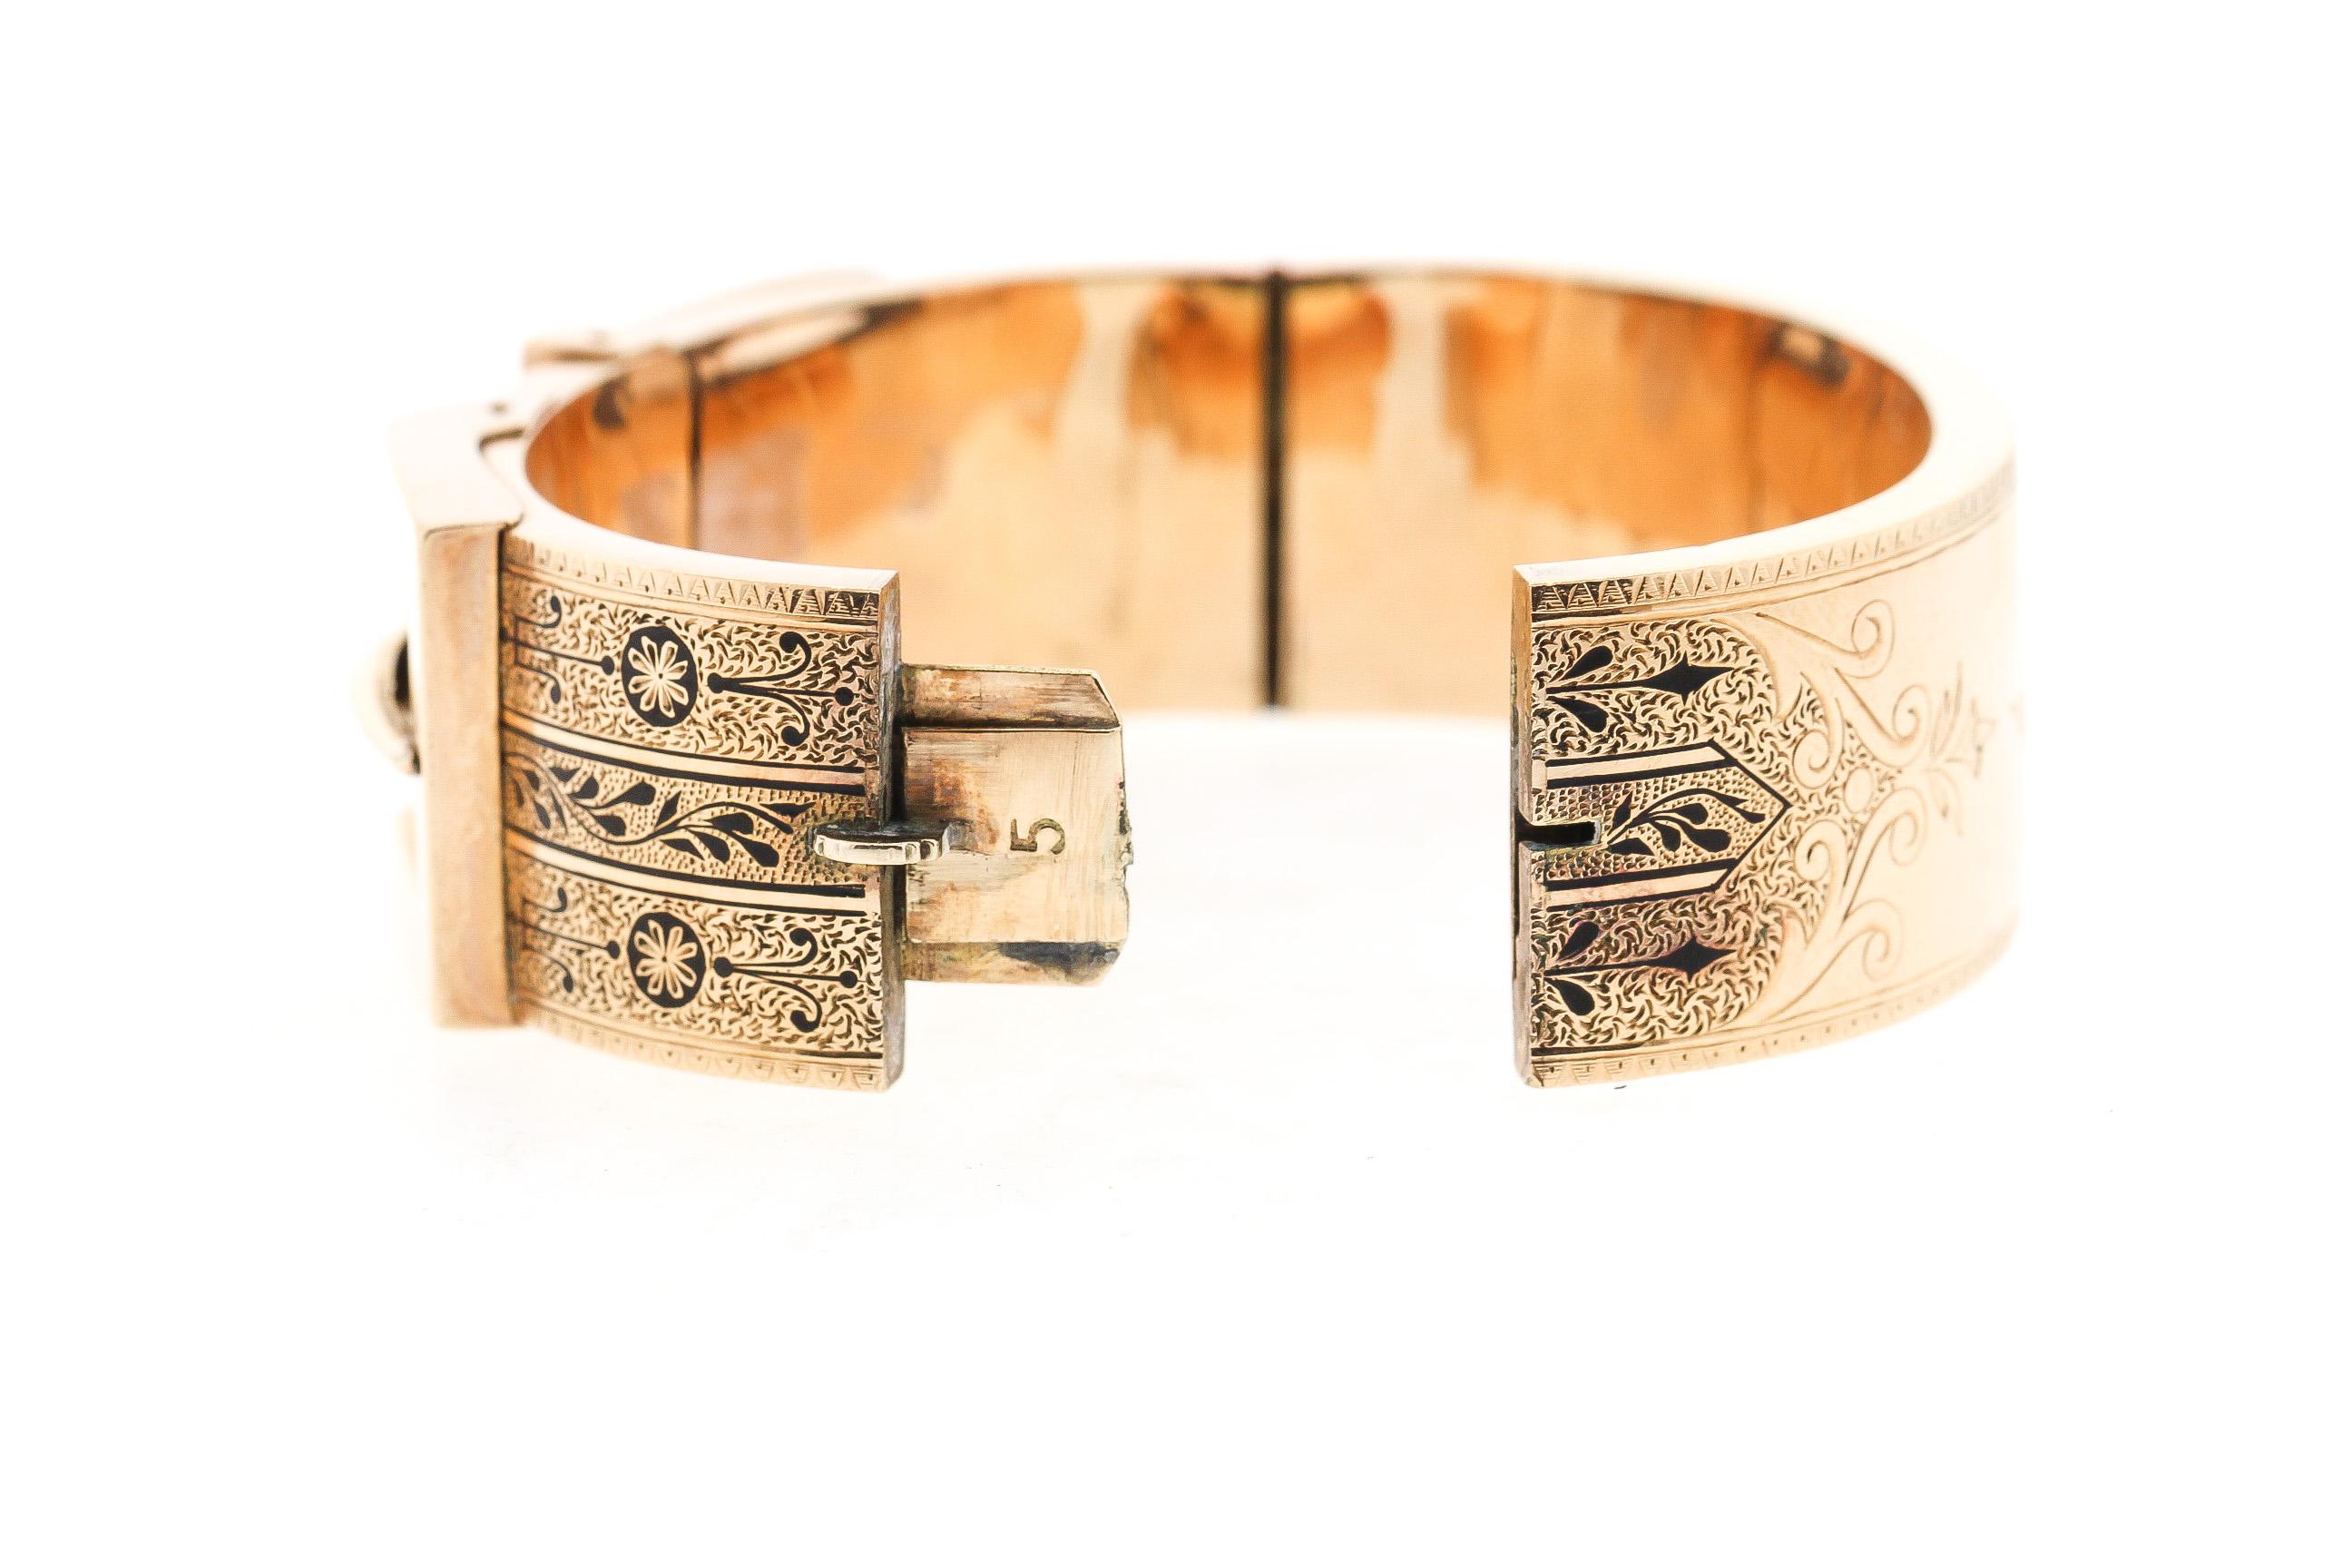 Buy Antique Belt Buckle Bangle Bracelet Sterling Silver Online in India -  Etsy